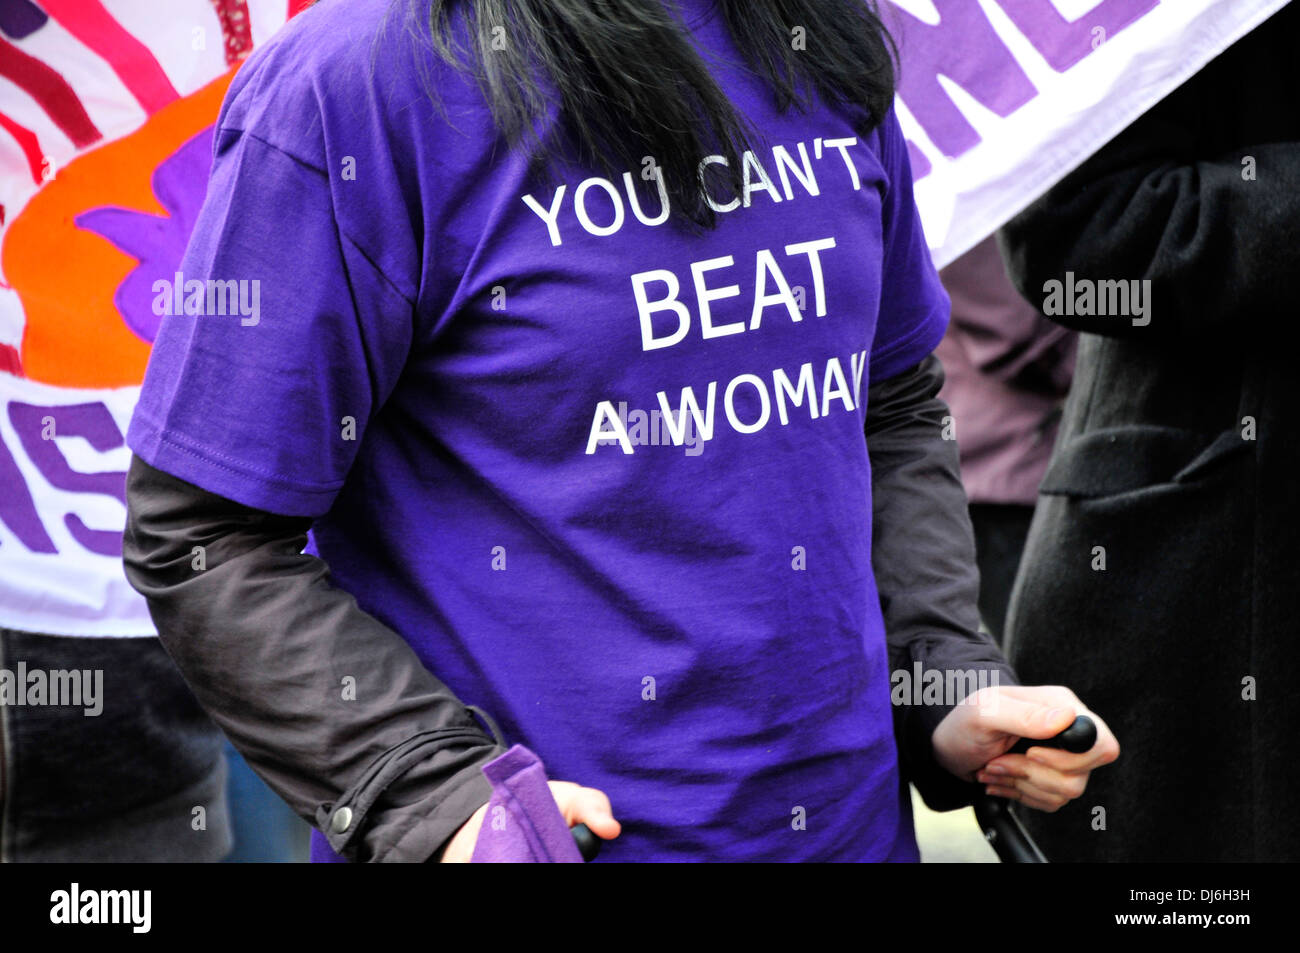 Eine Frau trägt ein Tee t-Shirt mit dem Slogan "man kann nicht einfach eine Frau" Trafalgar Square, London, Großbritannien Stockfoto